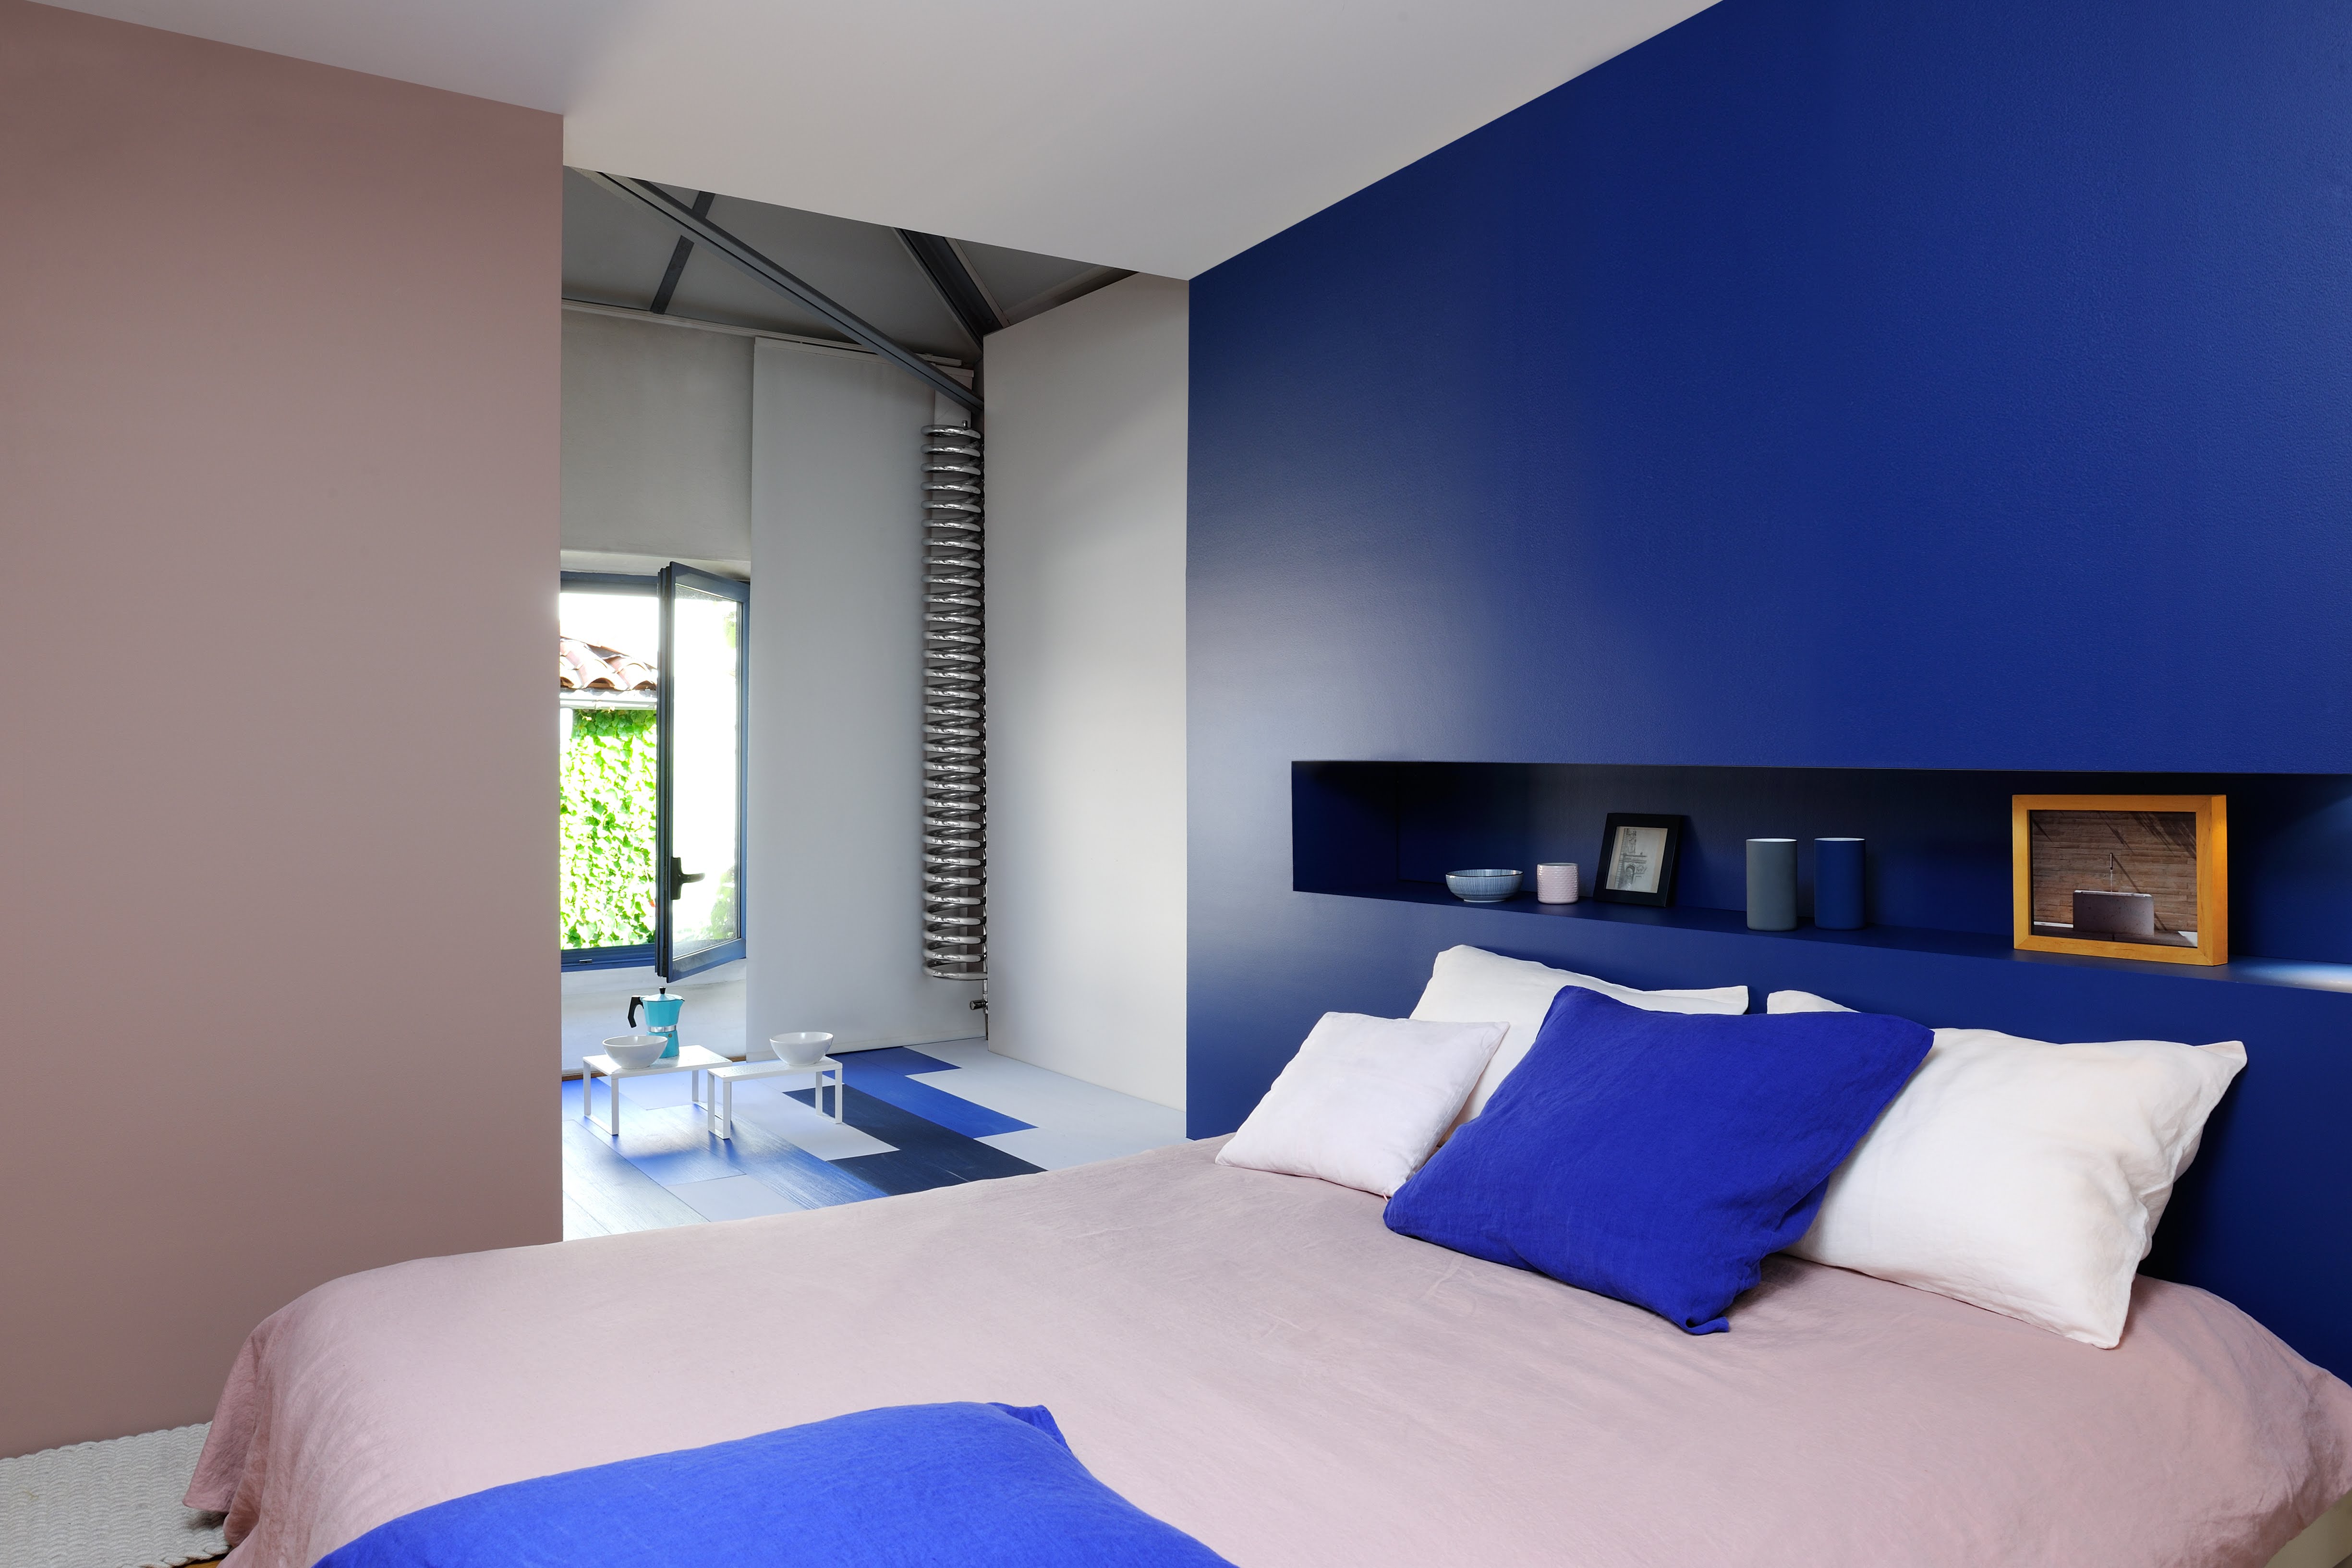 Chambre adulte réalisée avec de la peinture intérieure dans les tons pastels, beiges et bleus